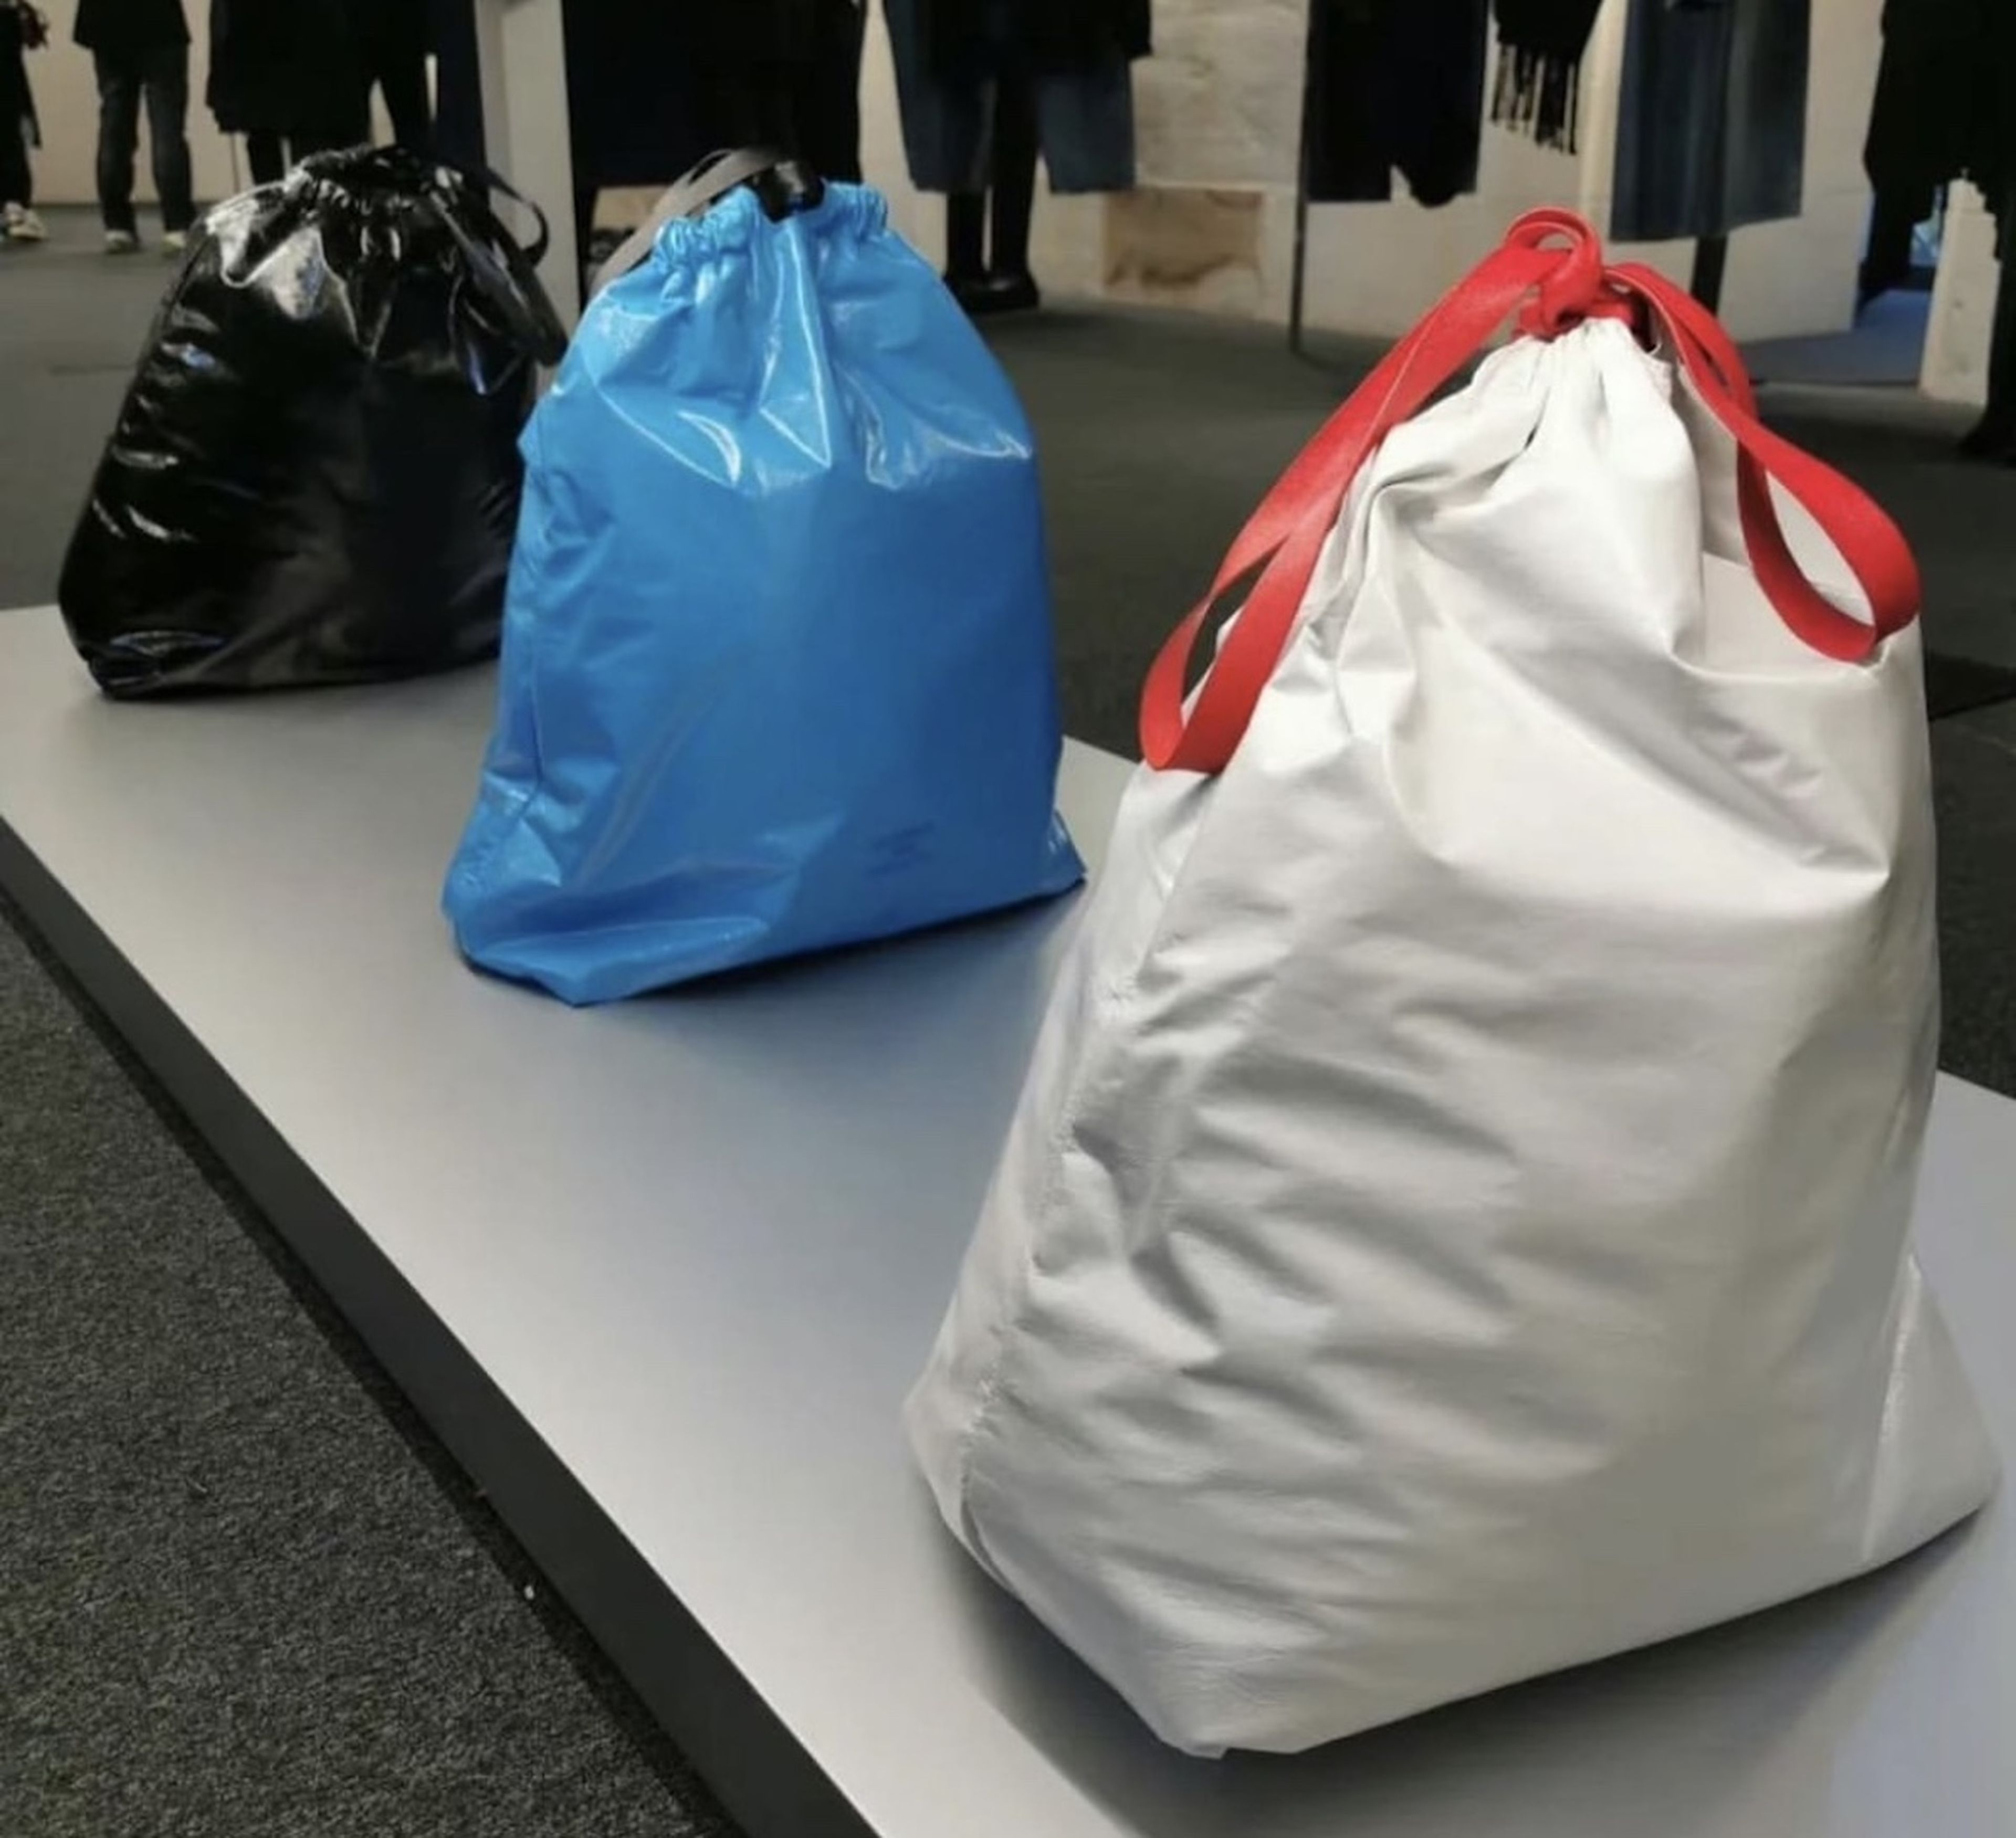 Balenciaga vende un bolso que imita una bolsa de basura por 1.750